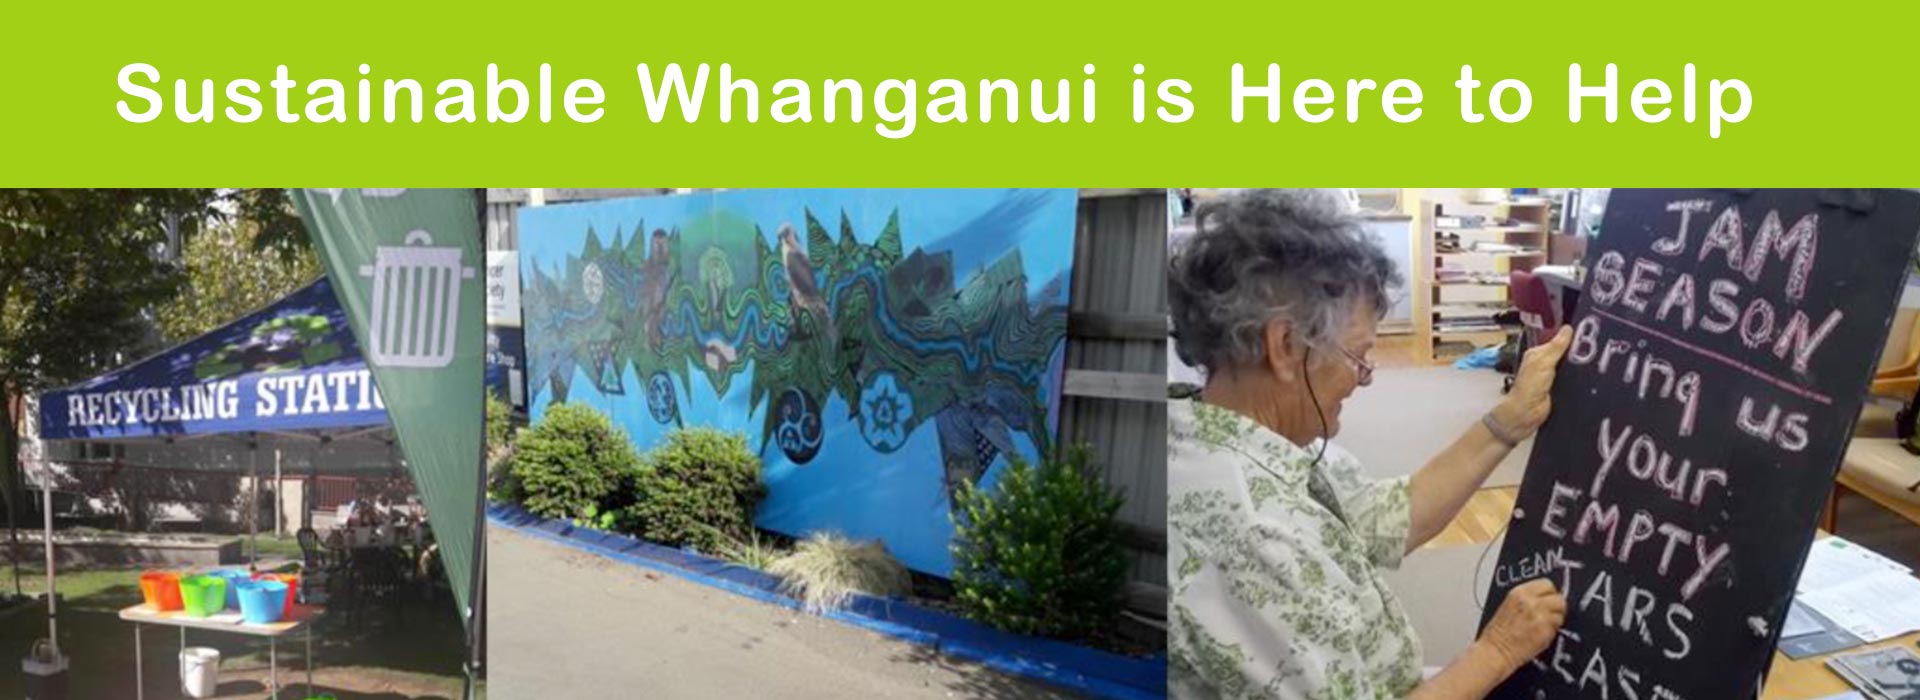 Sustaianble Whanganui